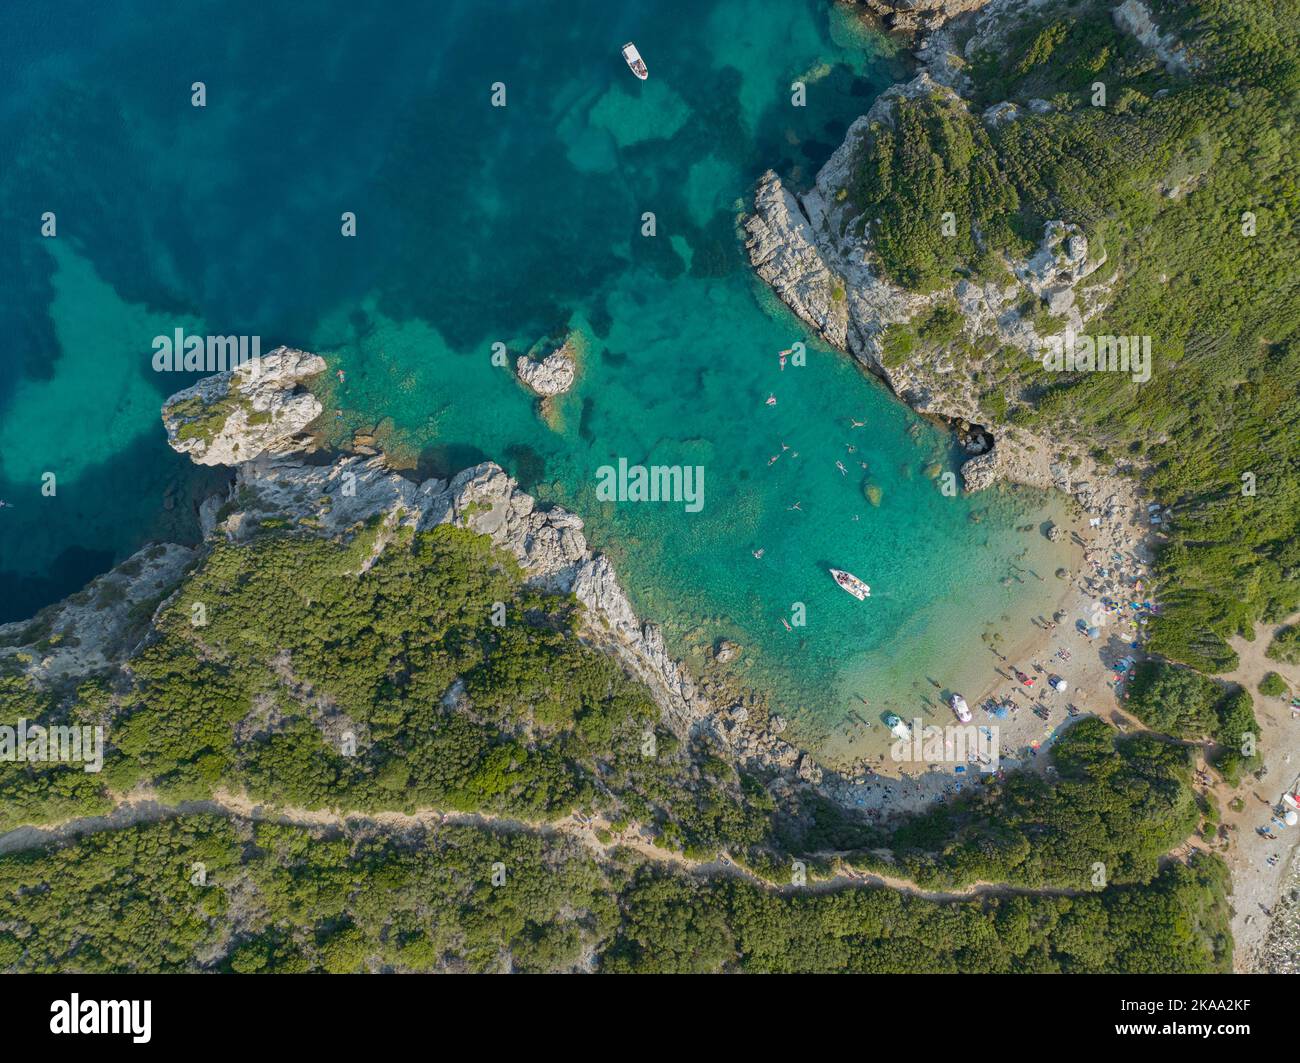 Veduta aerea della scogliera costiera che conduce alla spiaggia di Porto Timoni, isola di Corfù, Grecia. Sottile striscia che forma due spiagge bagnate da acqua cristallina Foto Stock